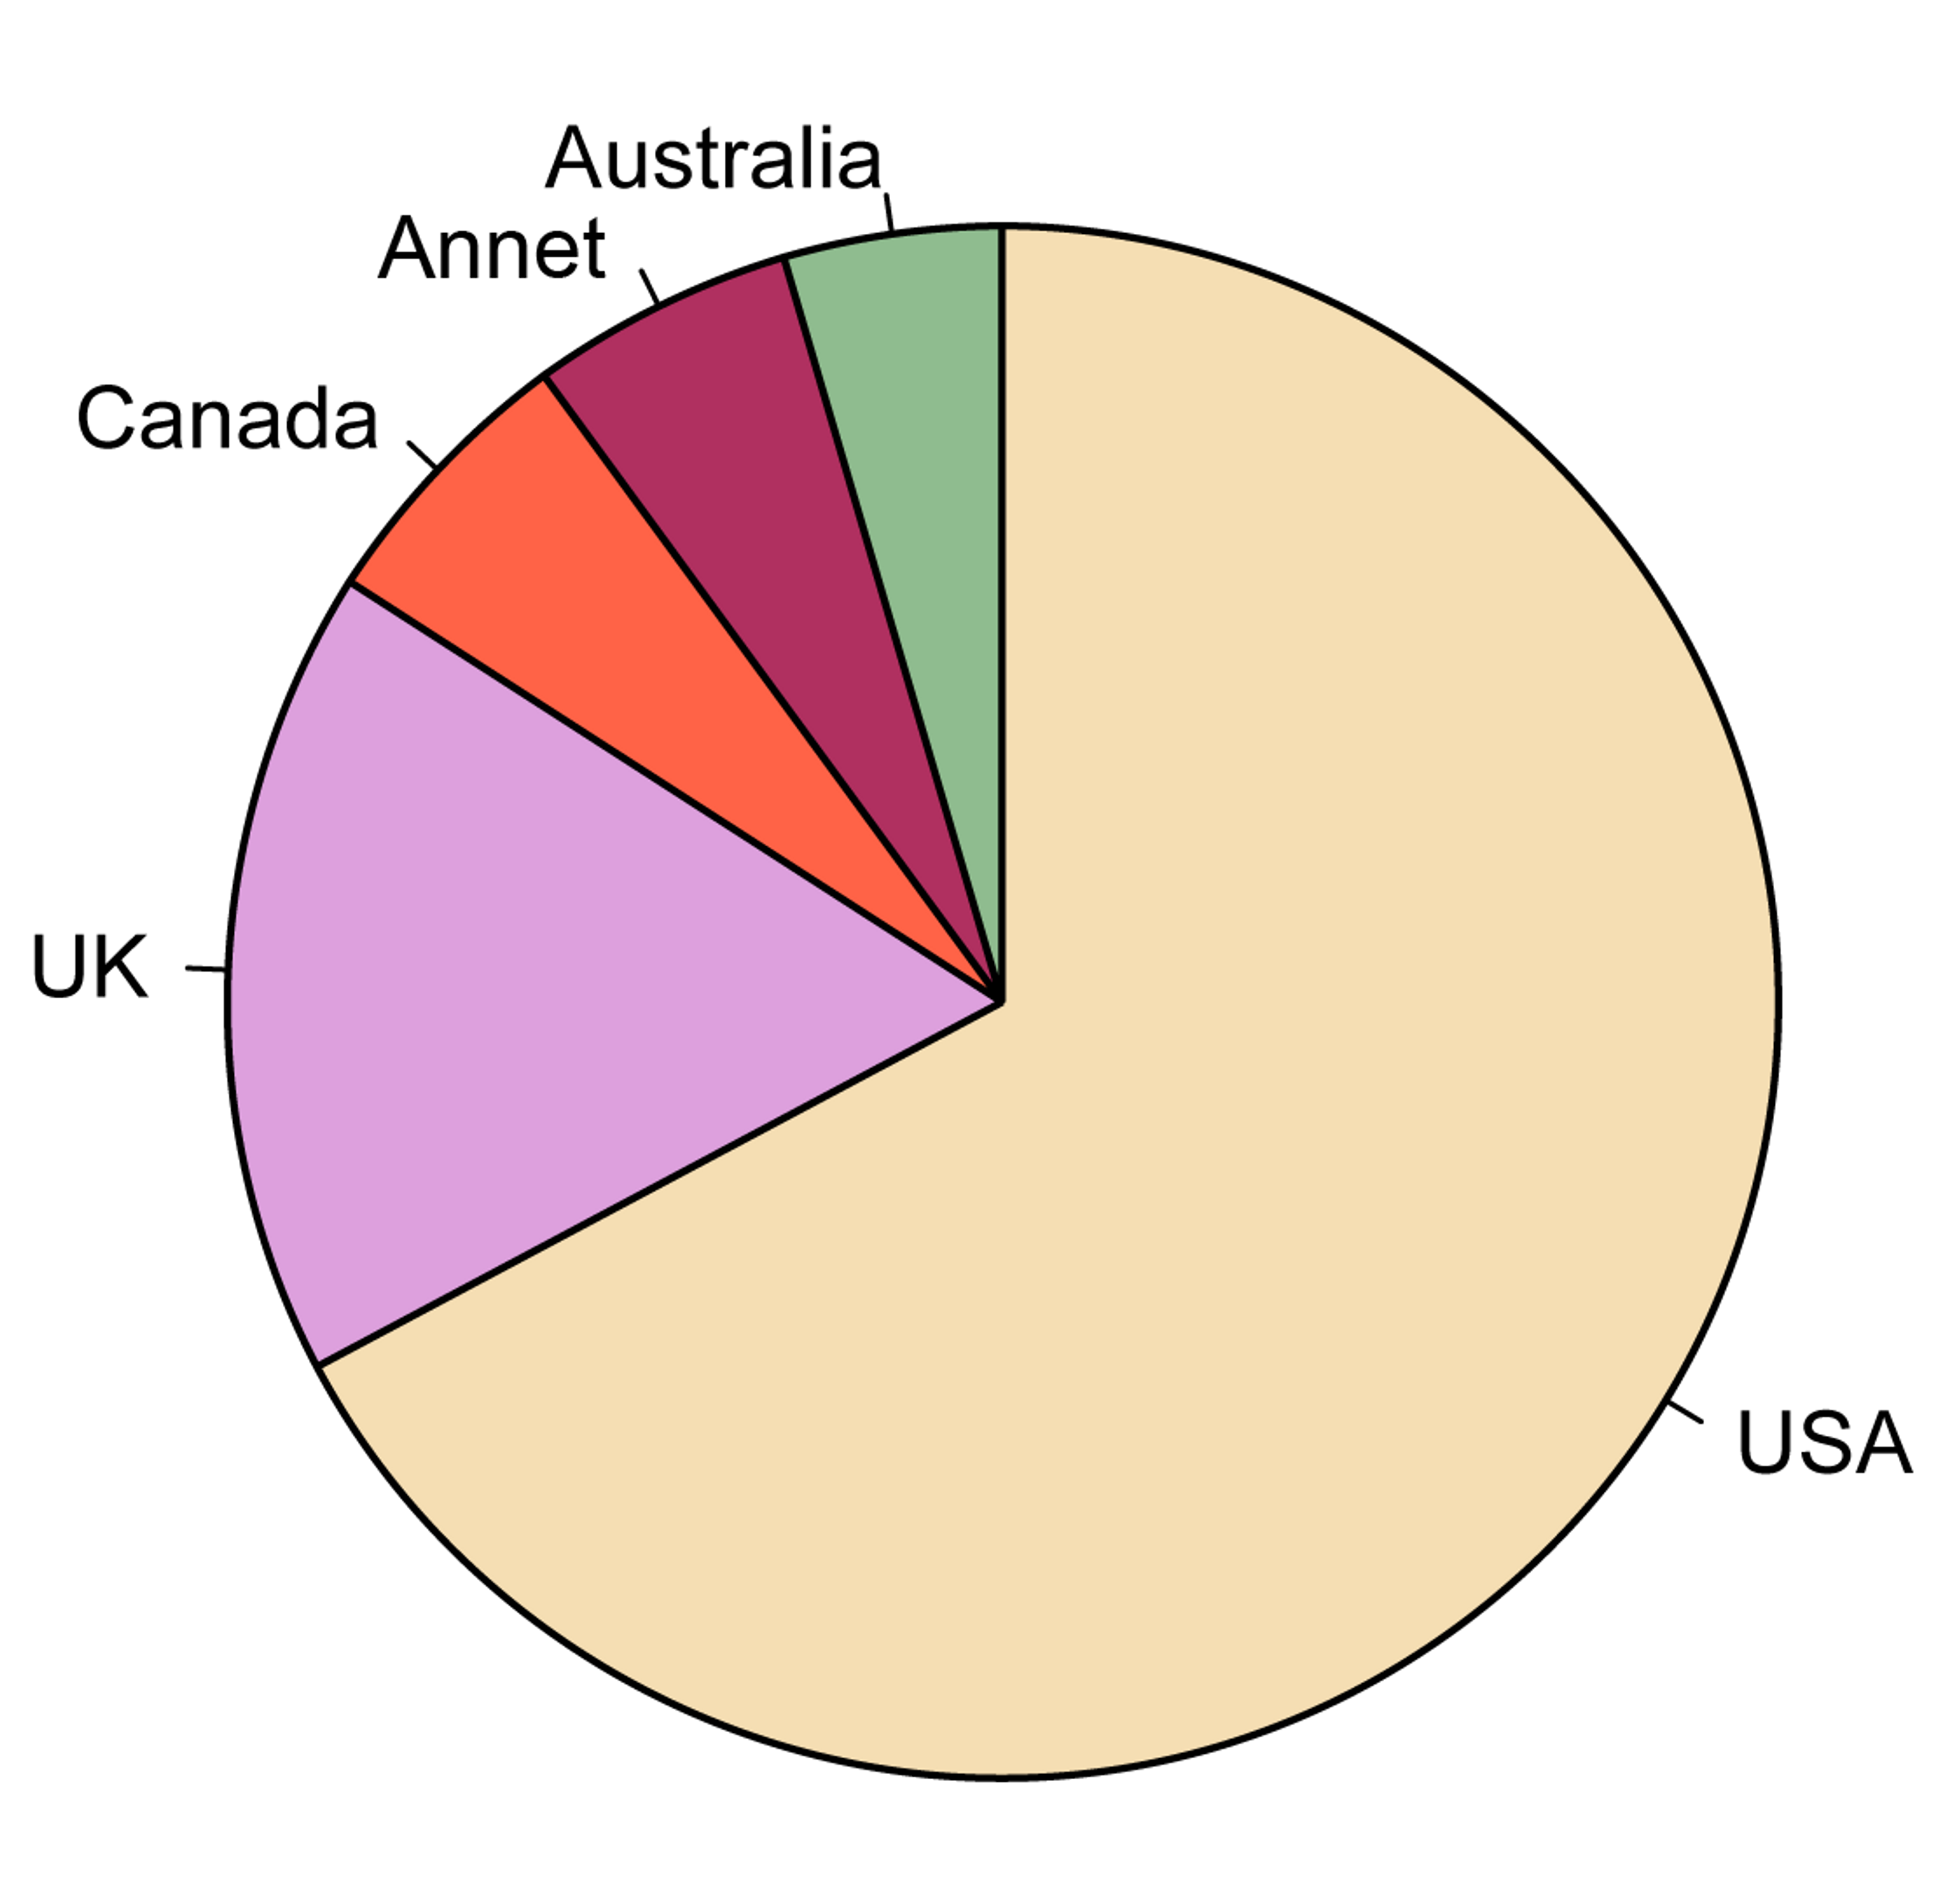 Et sektordiagram som viser hvordan engelskspråklige fordeler seg på ulike land. Omtrent to tredjedeler av kaken fylles av USA, rundt en fjerdedel av UK, og resten er fordel mellom Canada, Australia og annet. 